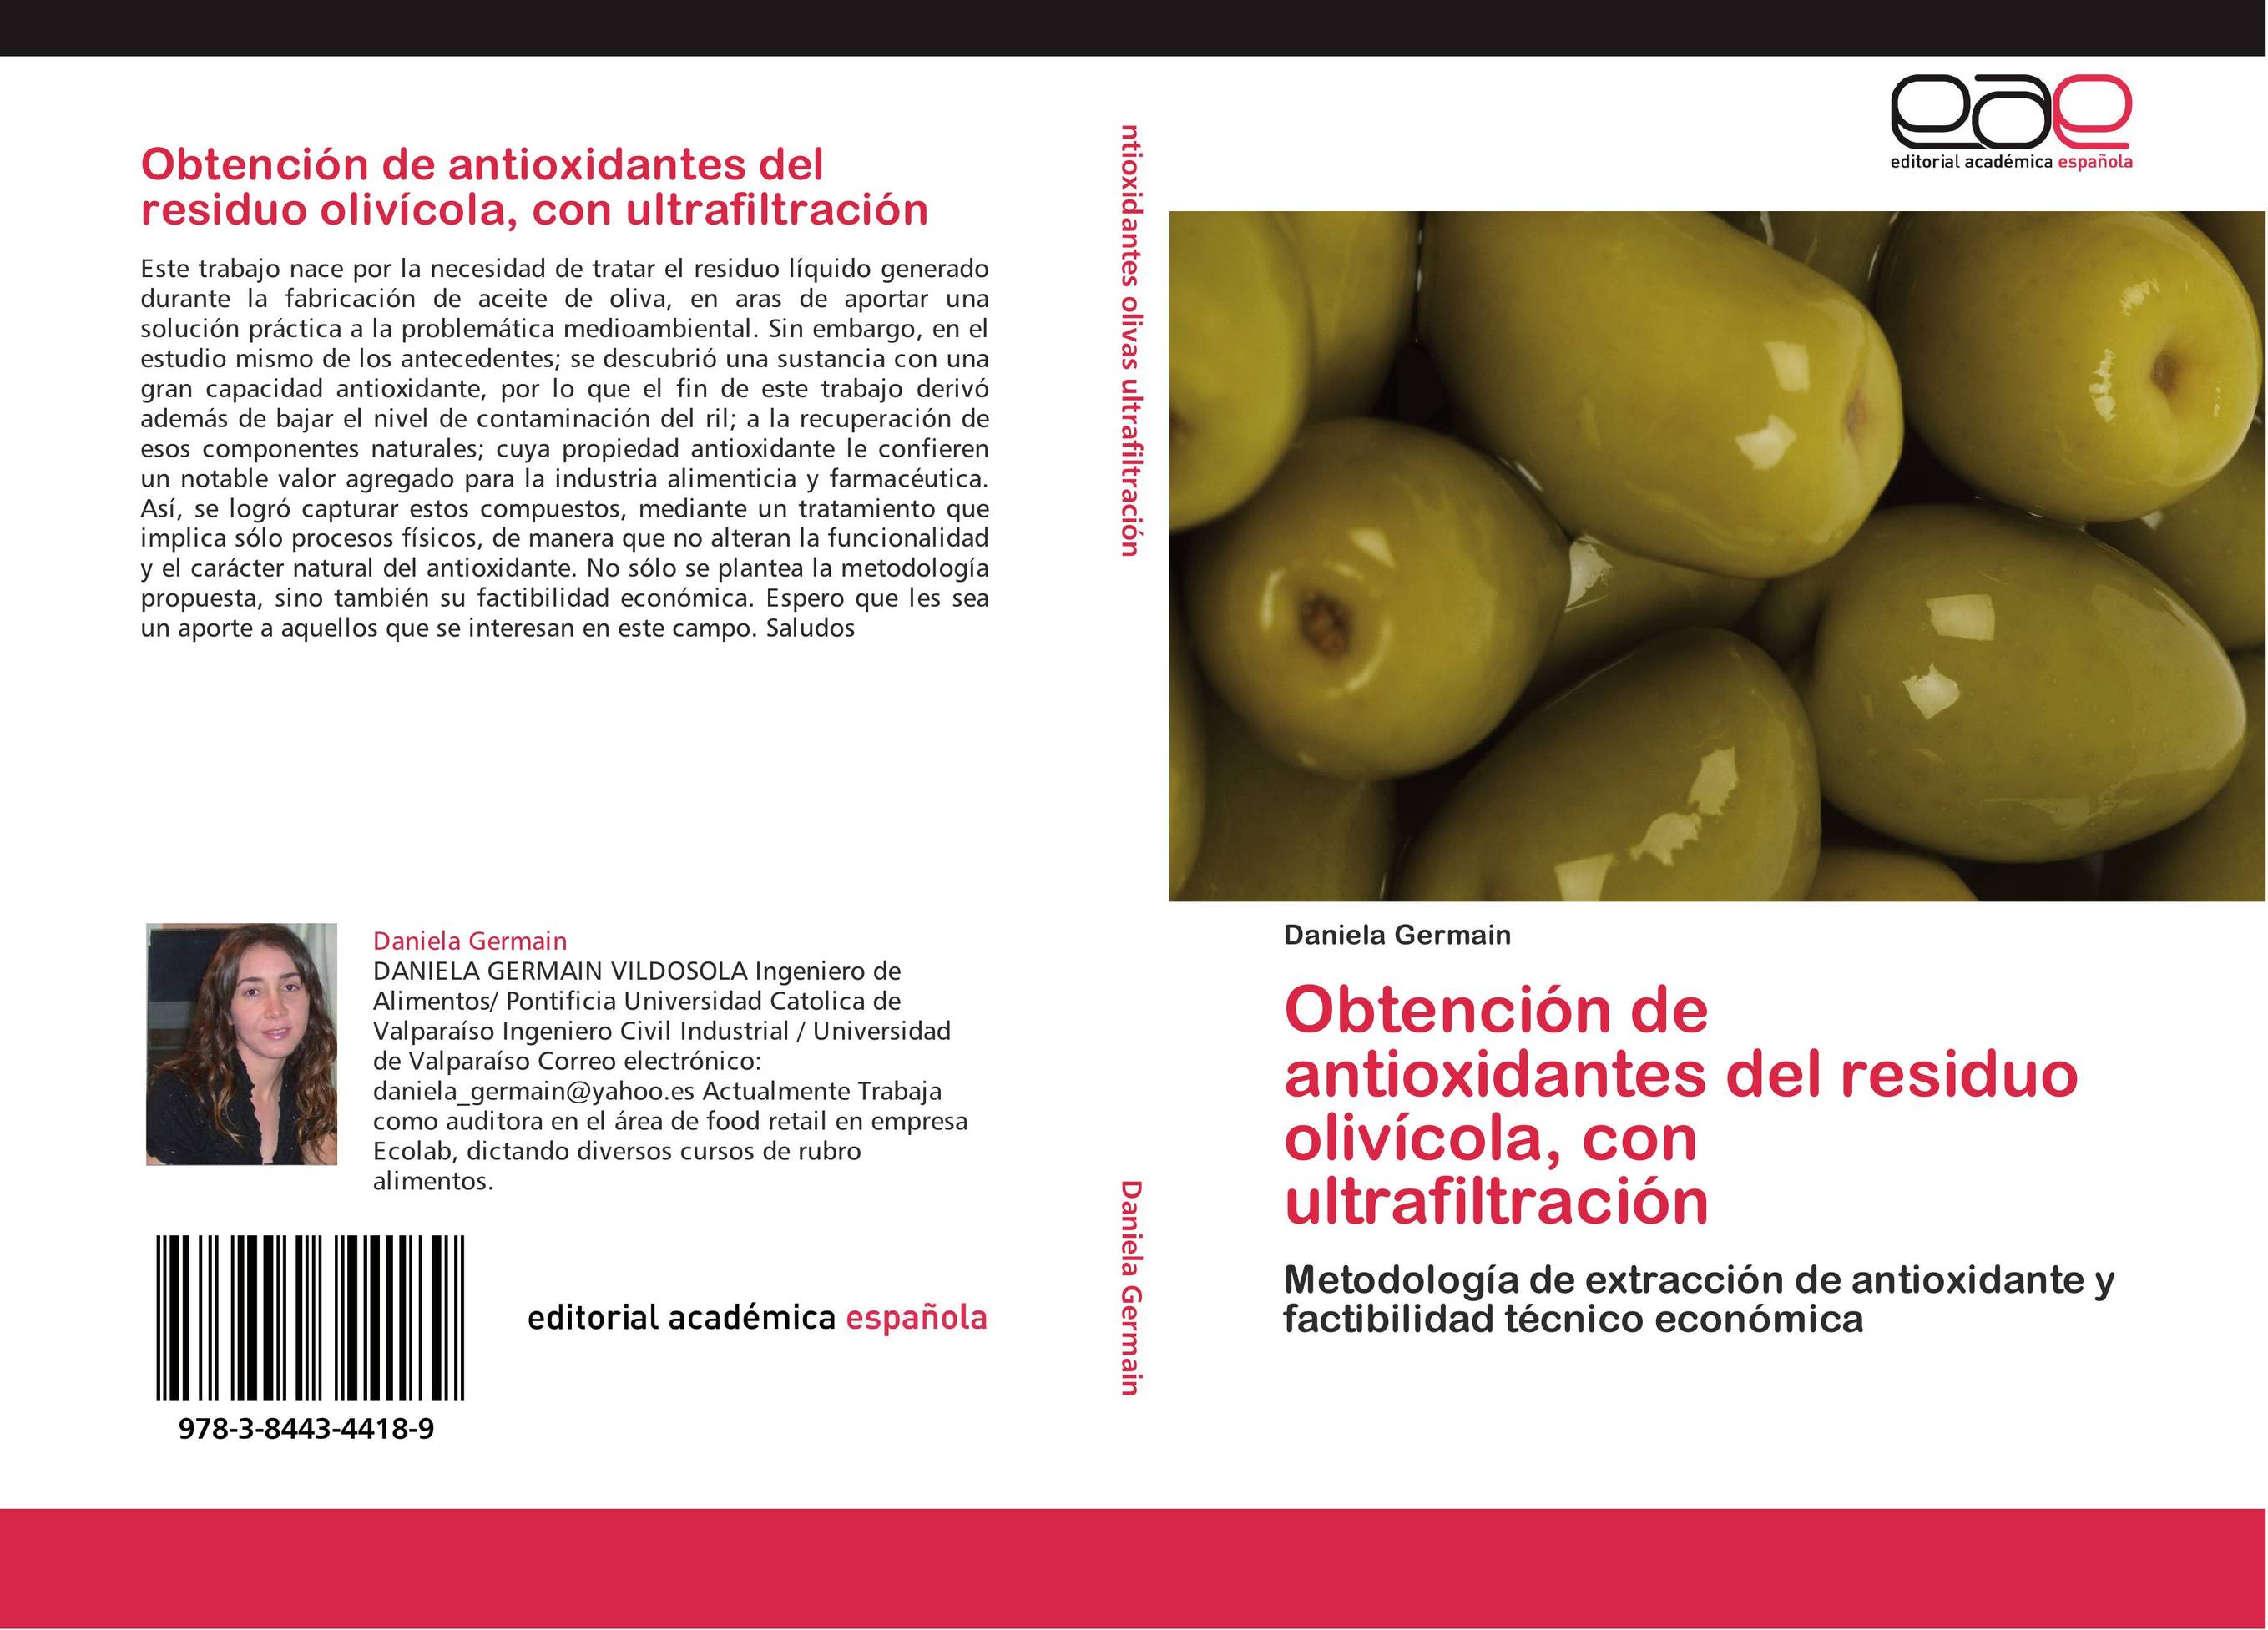 Obtención de antioxidantes del residuo olivícola, con ultrafiltración